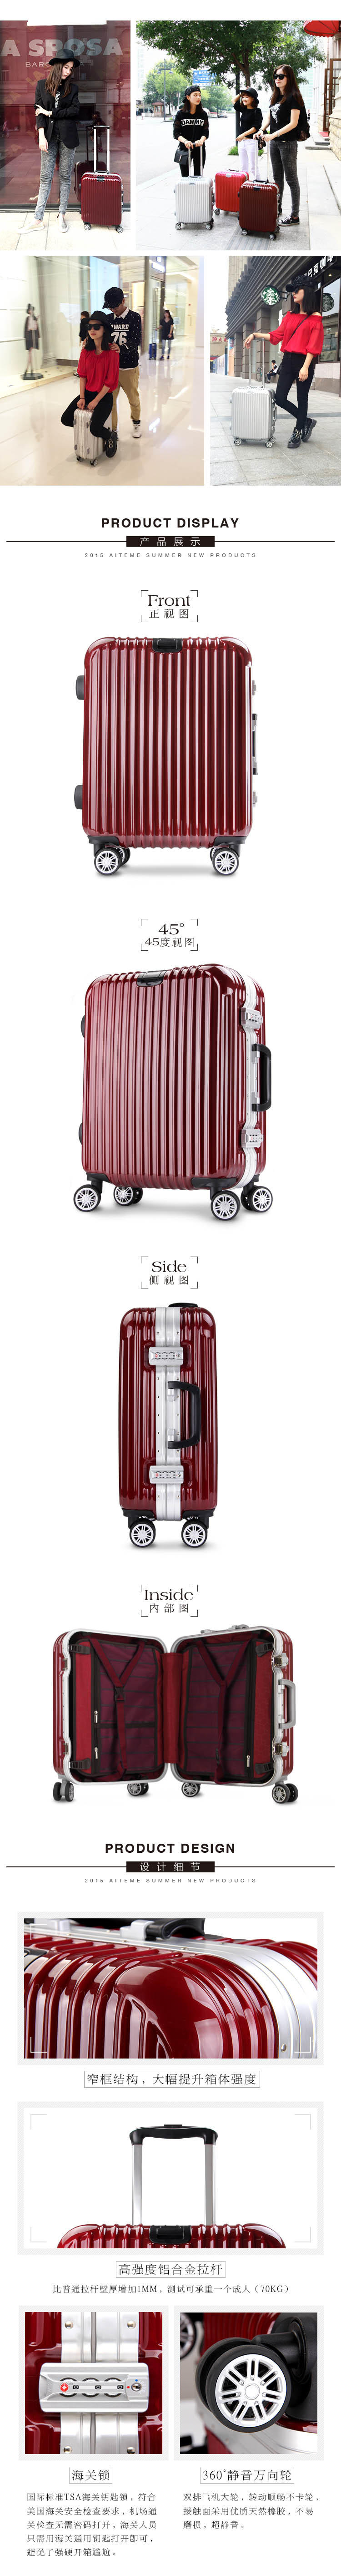 商务铝框密码拉杆箱万向轮女男行李登机箱韩版旅行箱24寸学生时尚潮流箱包箱子